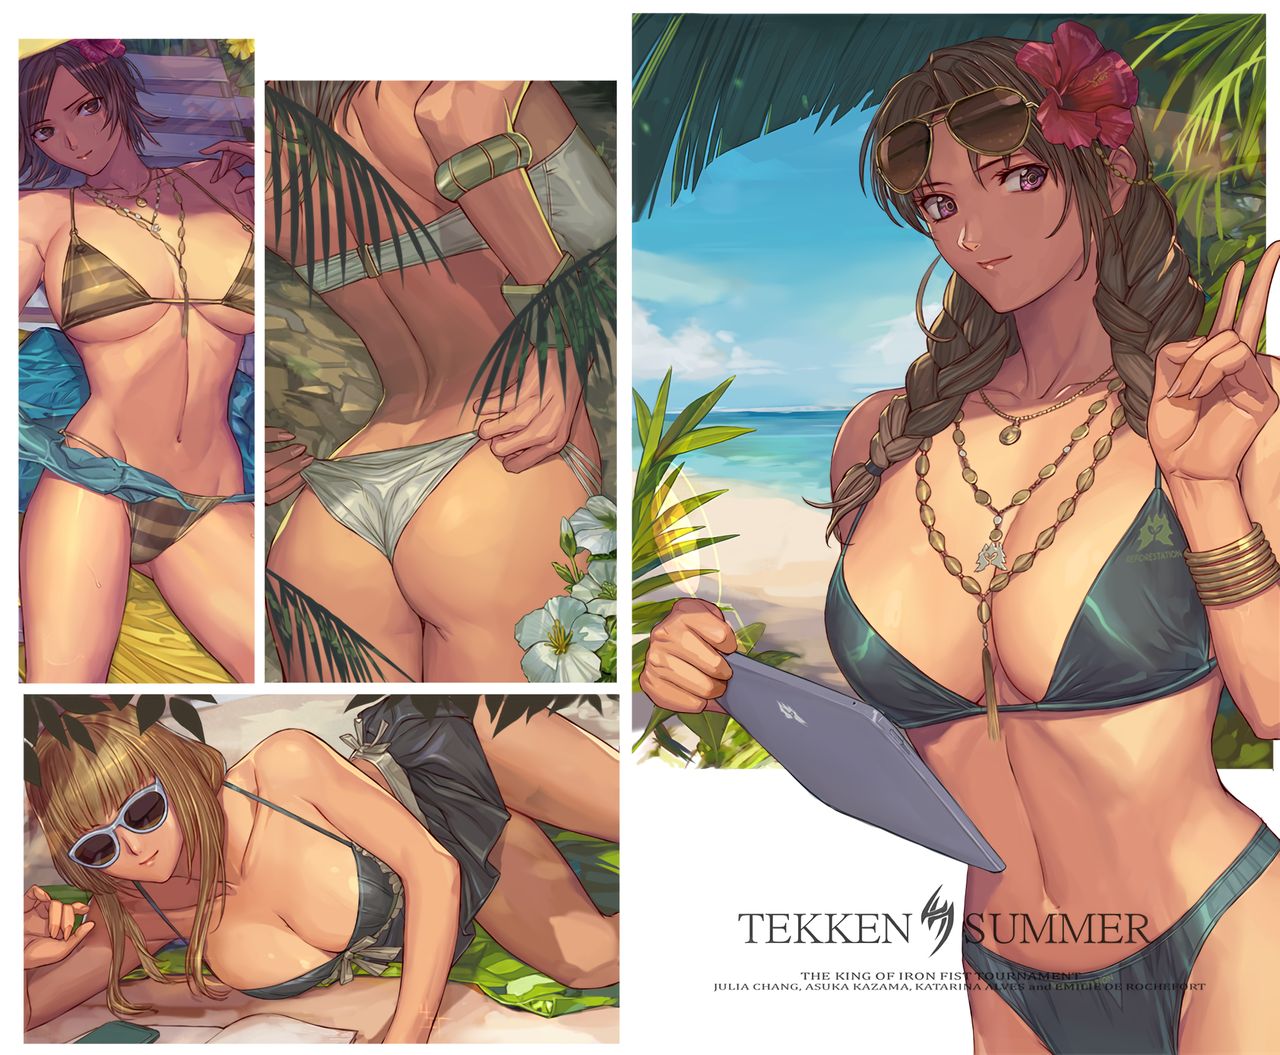 4girls alluring asuka_kazama beach bikini emilie_de_rochefort hot ibanen julia_chang katarina_alves kazama_asuka namco tekken tekken_7